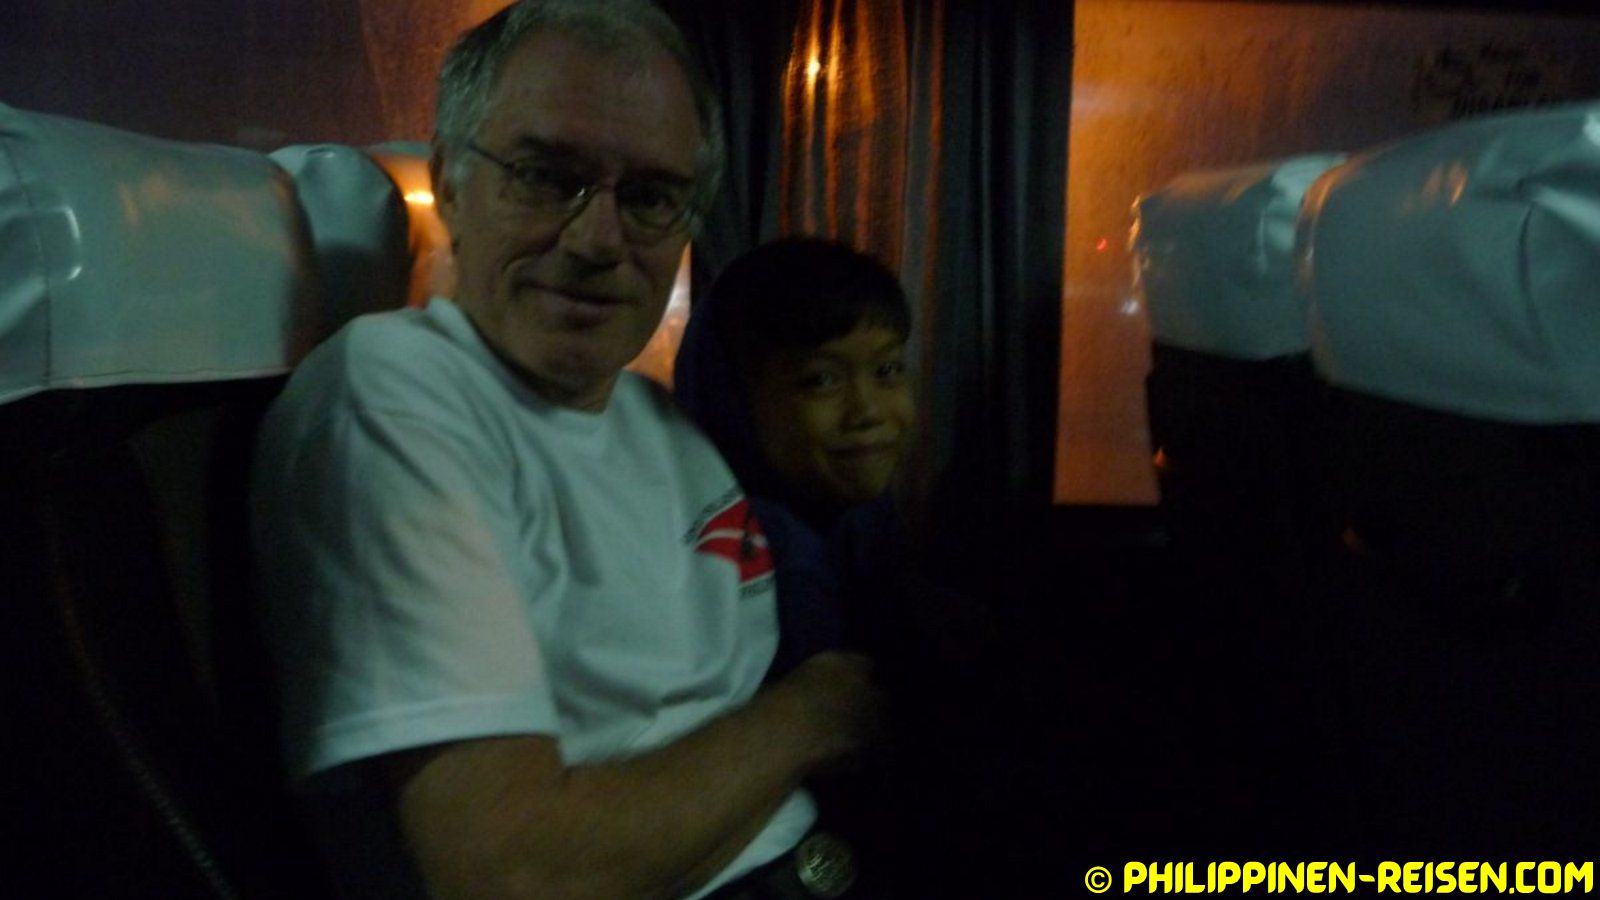 PHILIPPINEN REISEN - REISEBERICHTE - Busfahrt nach Lianga Foto von Sir Dieter Sokoll